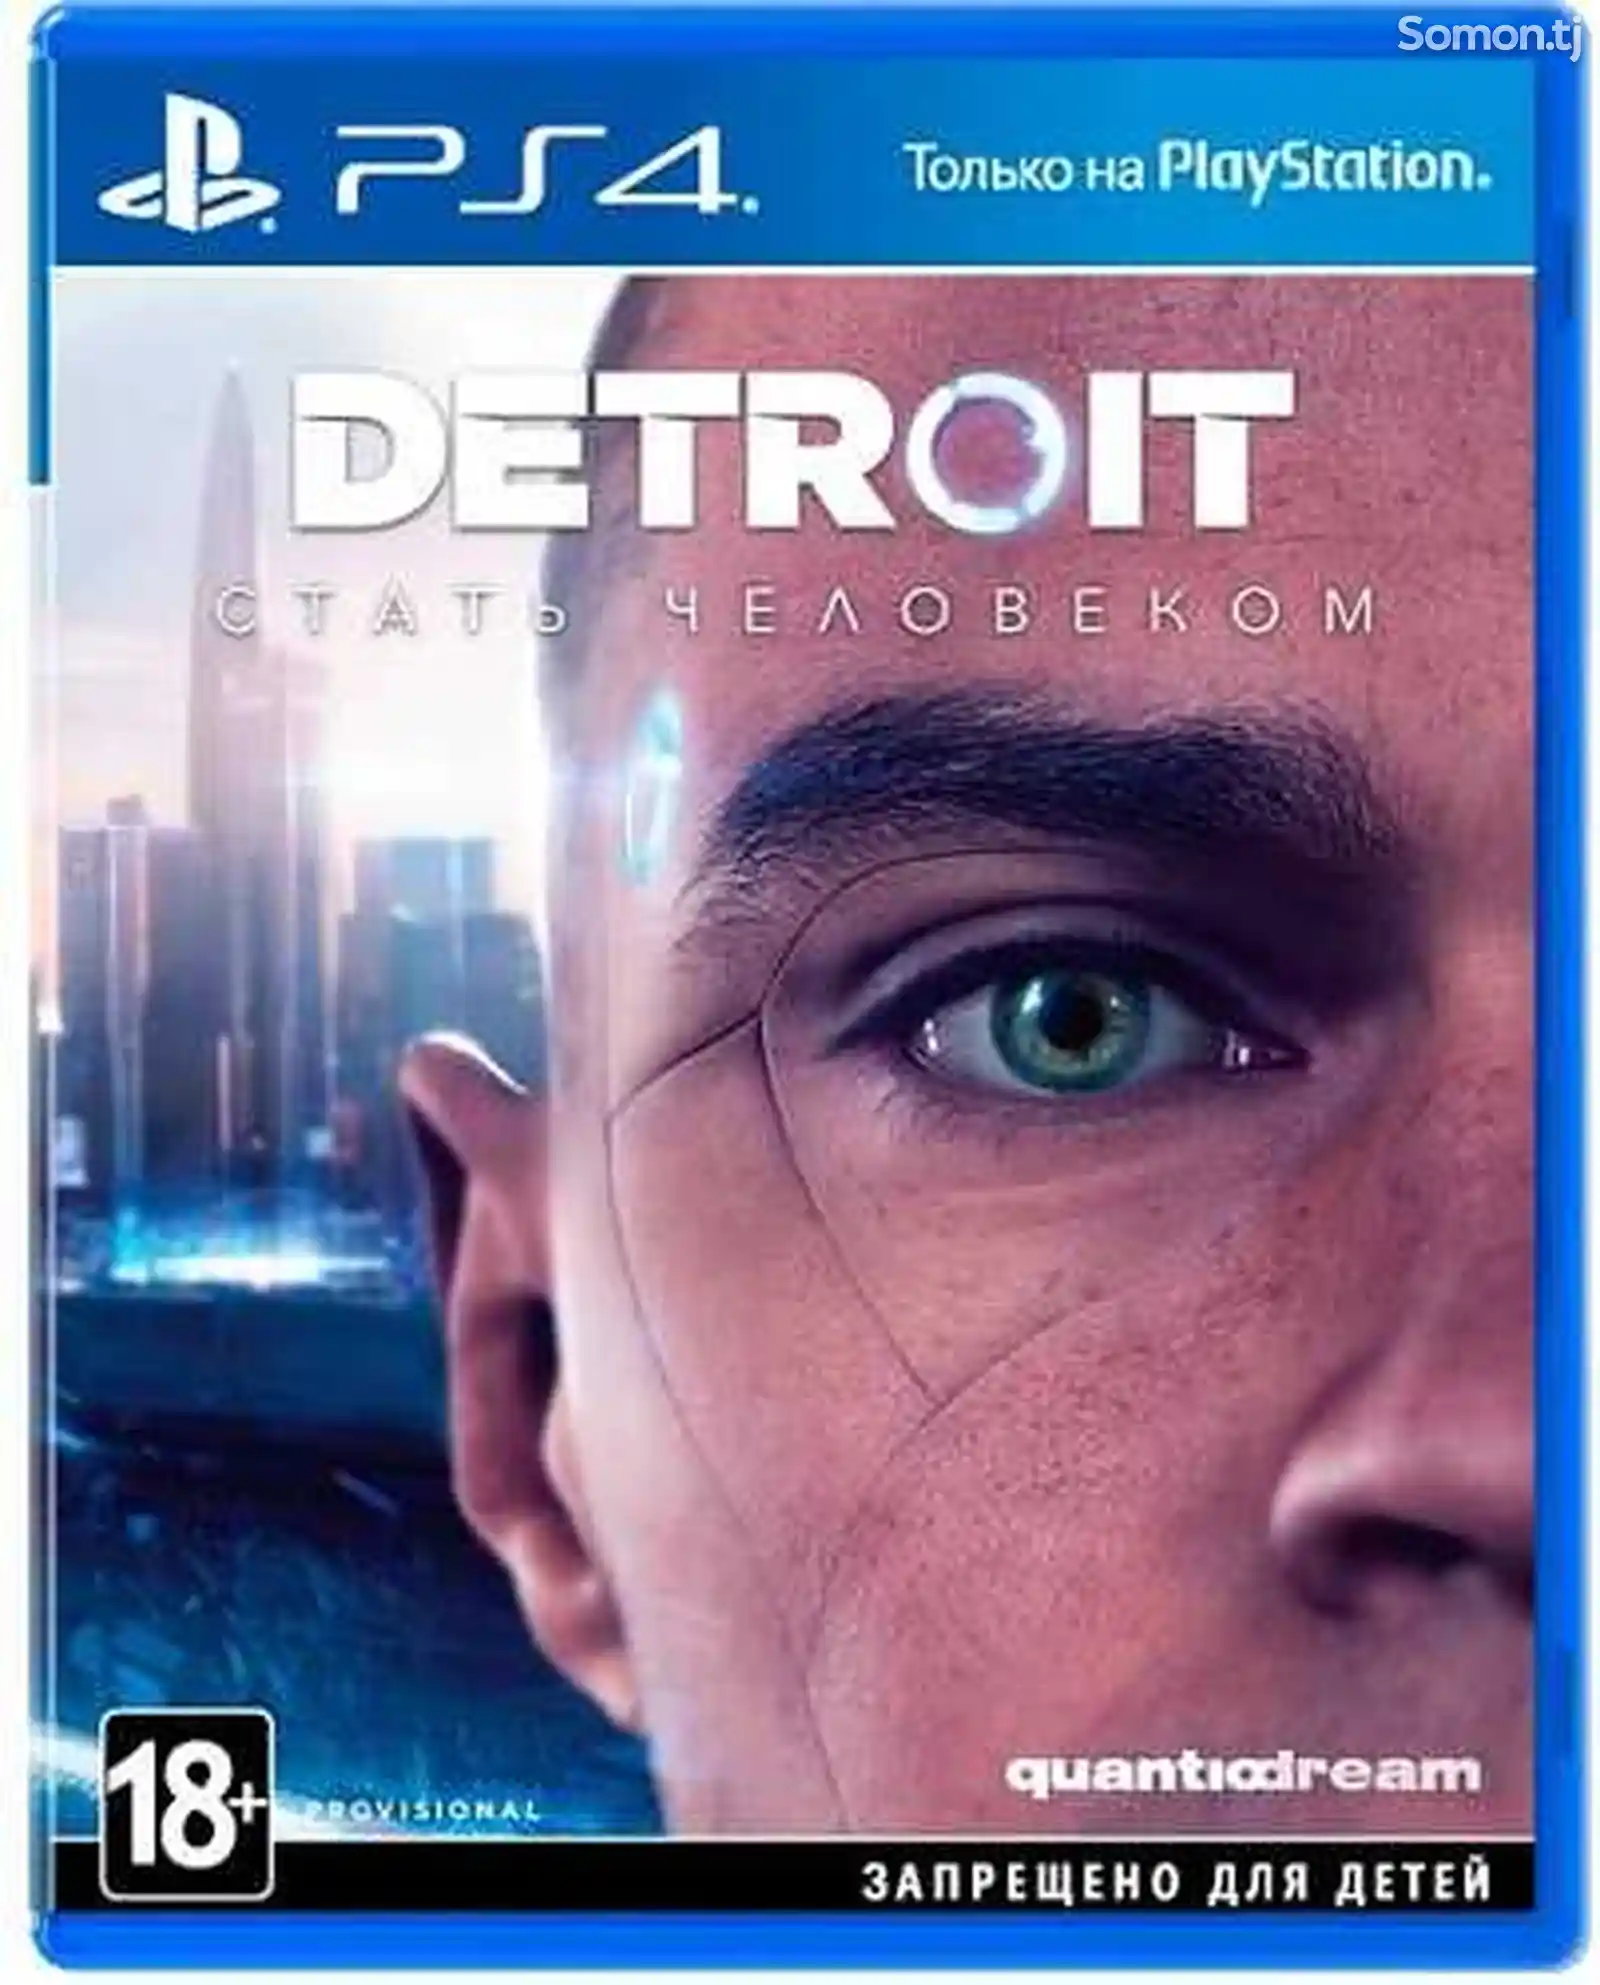 Игра Detroit Стать человеком для Sony PS4-1